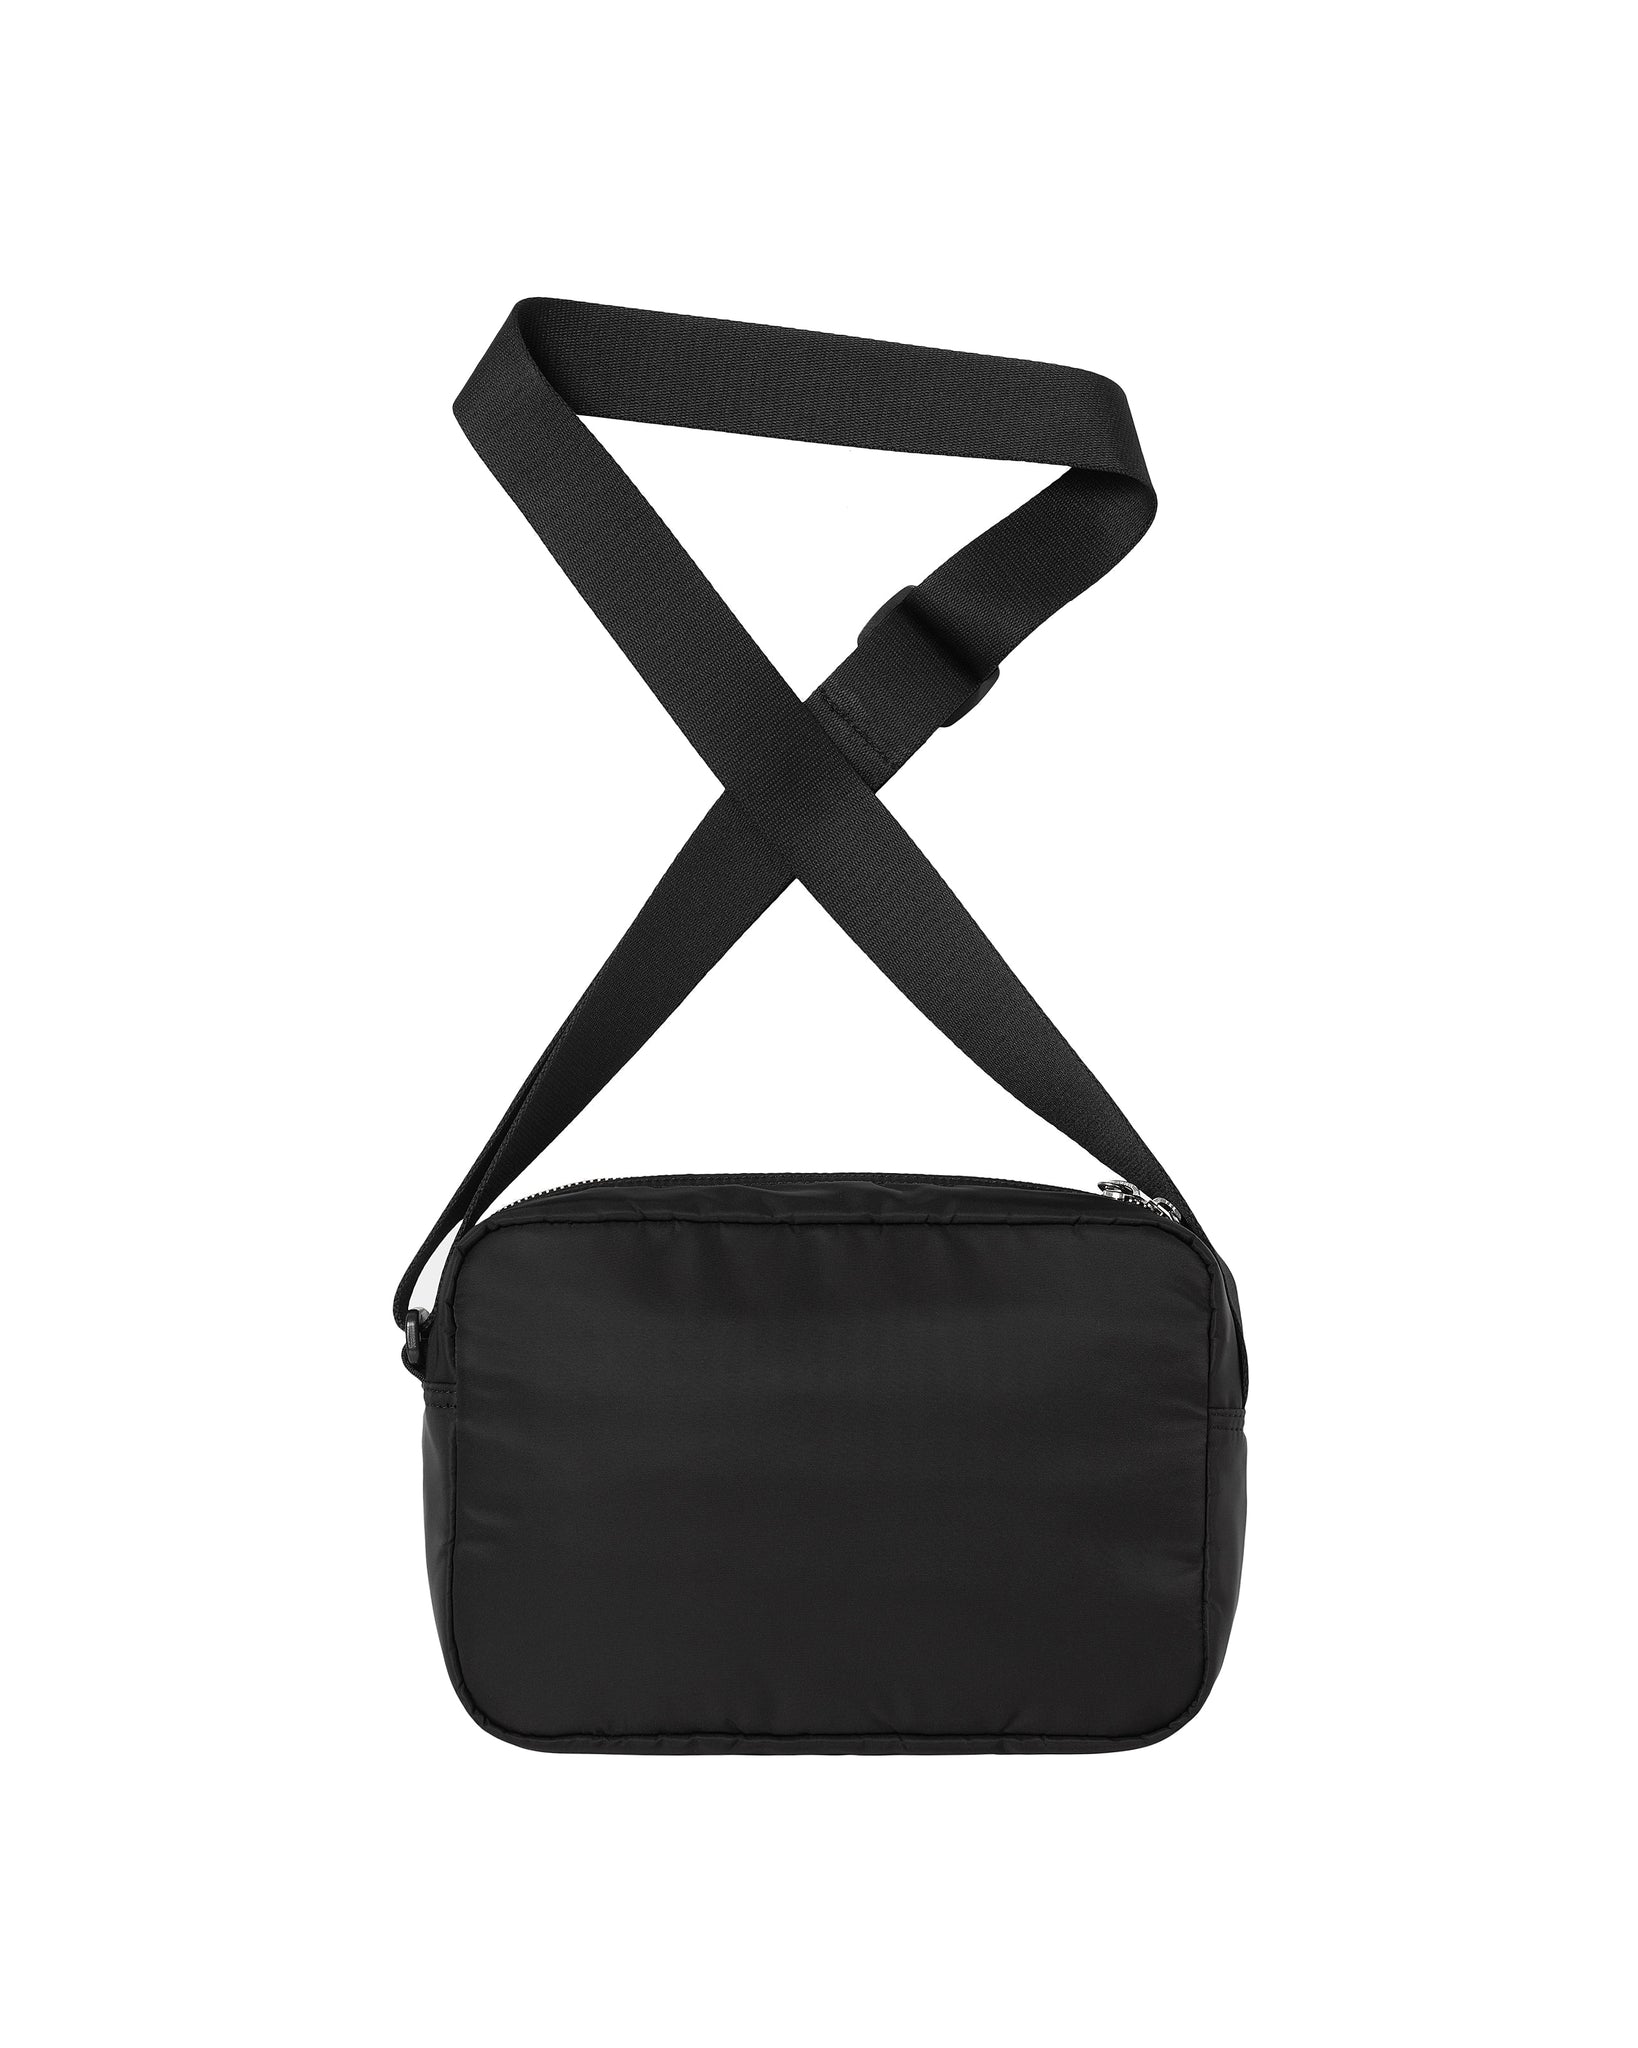 Otley shoulder bag - black